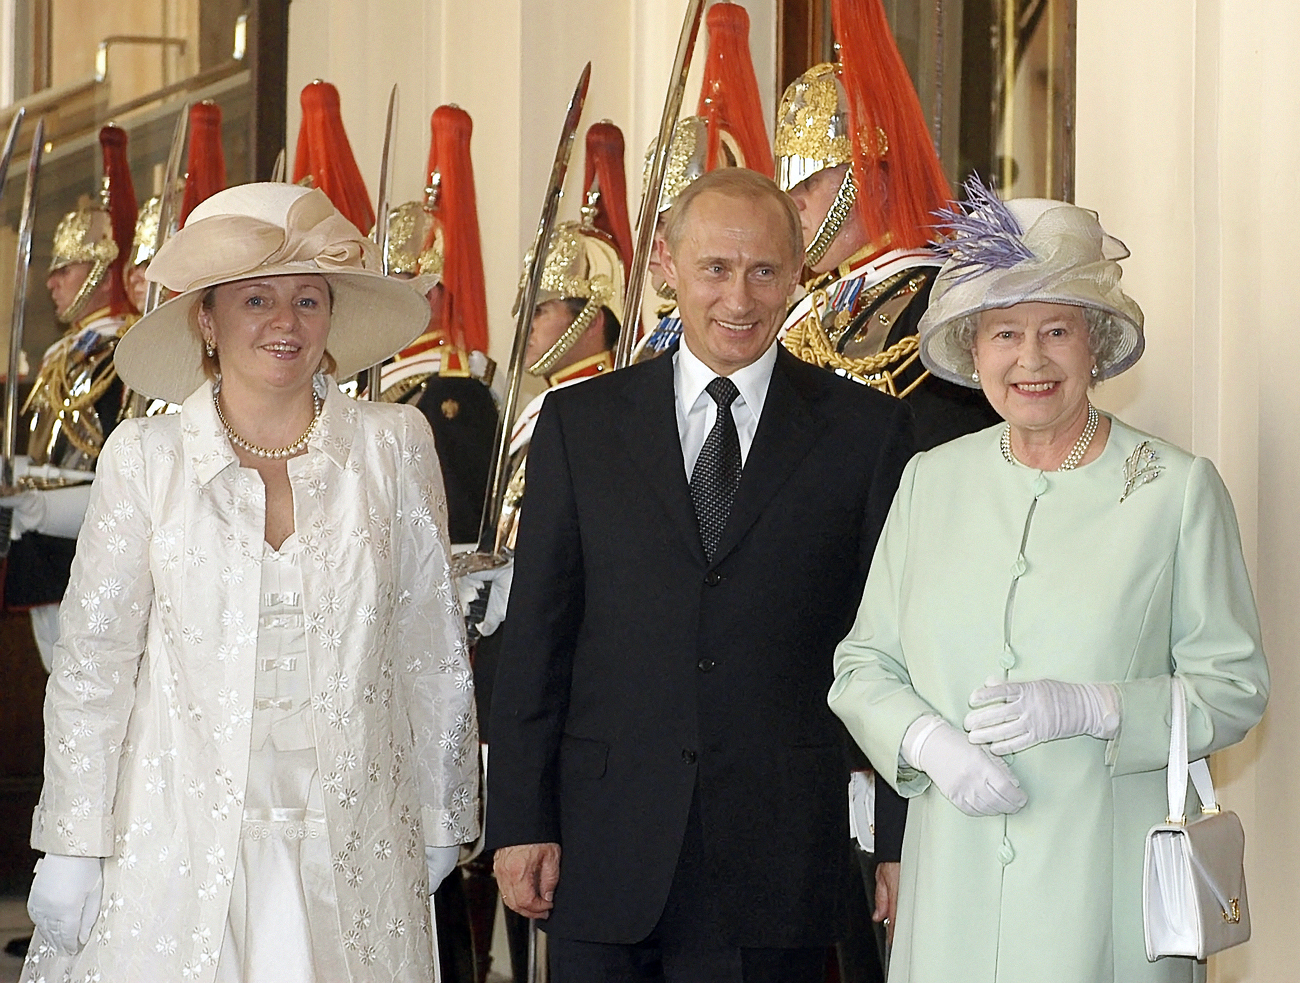 Ljudmila Putina mit ihrem Ehemann Wladimir Putin beim Staatsbesuch in Großbritannien am 24. Juni 2003. Foto: Alexey Panov / RIA Novosti